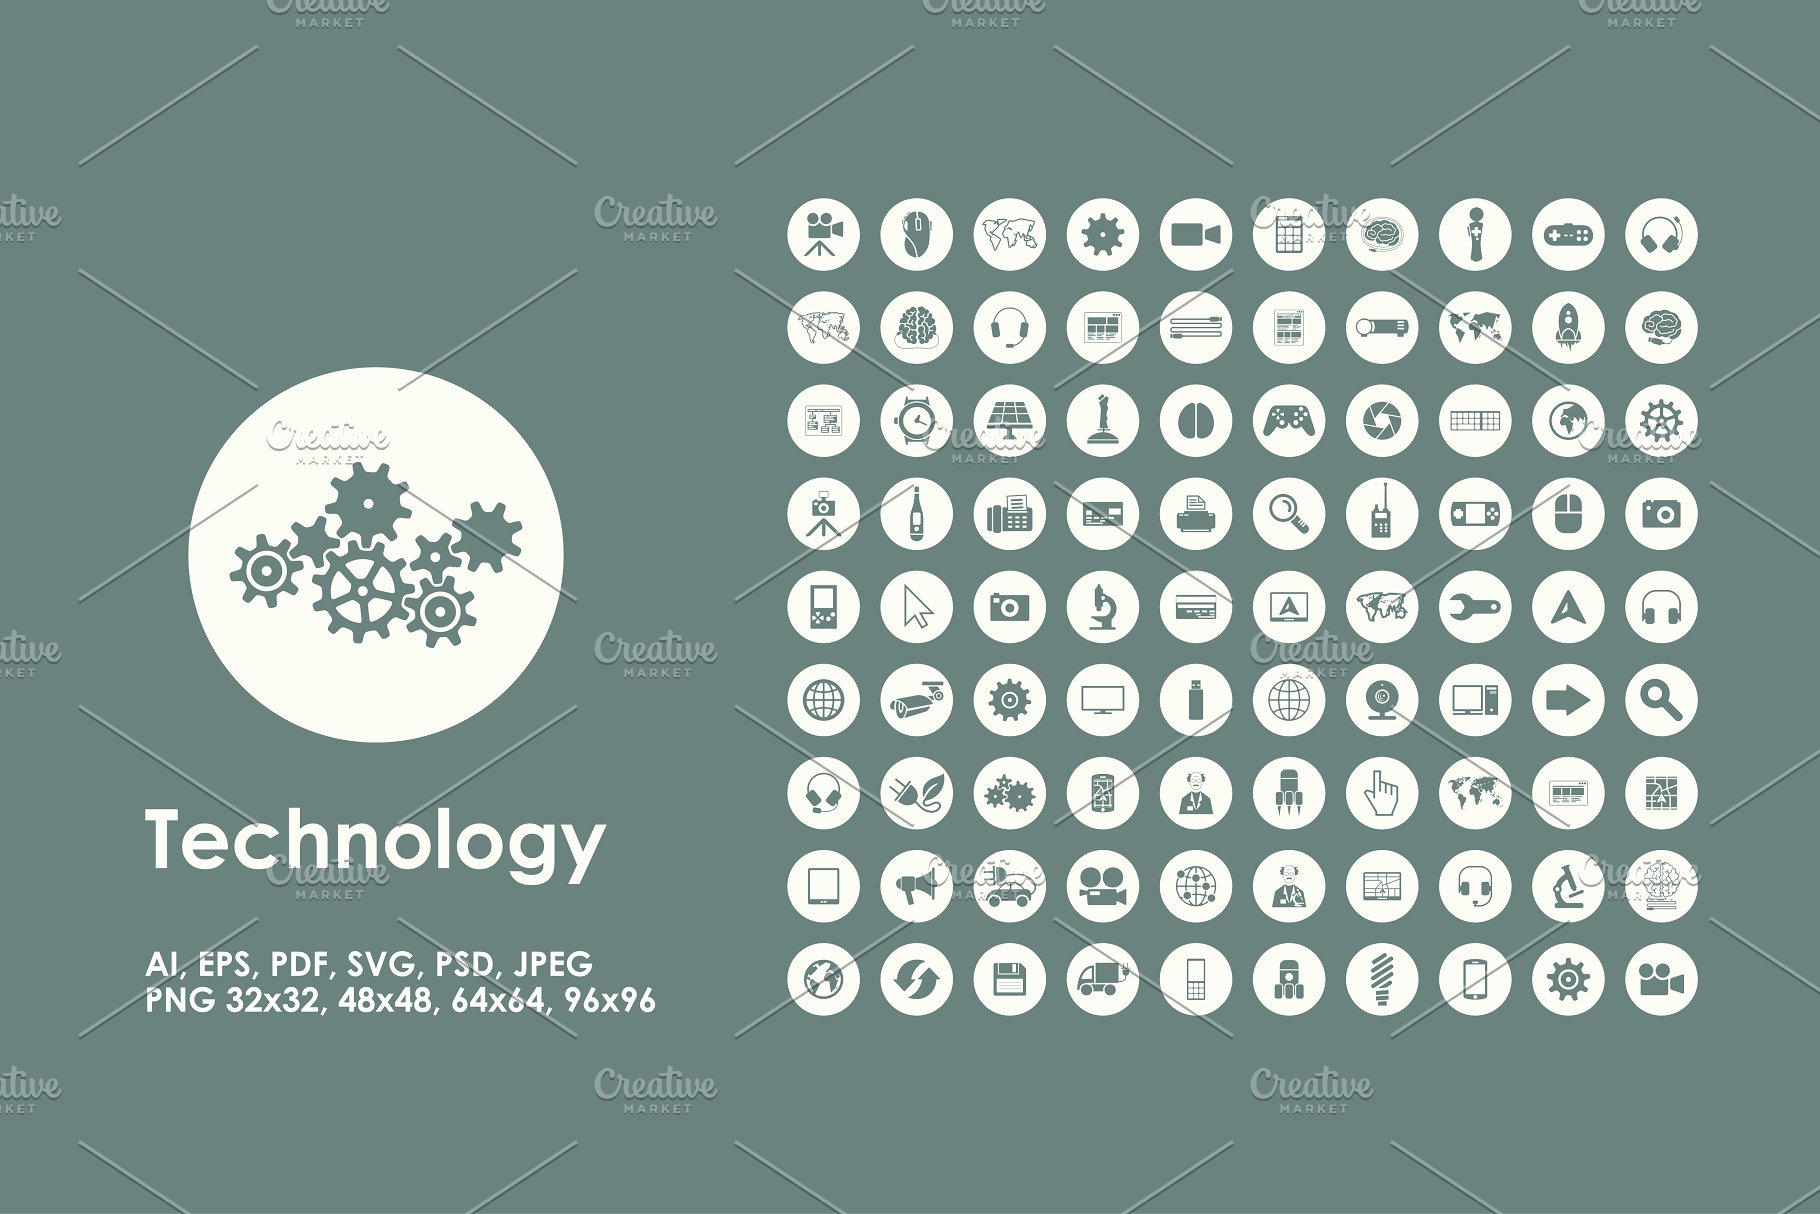 技术矢量图标下载 Technology icons #139